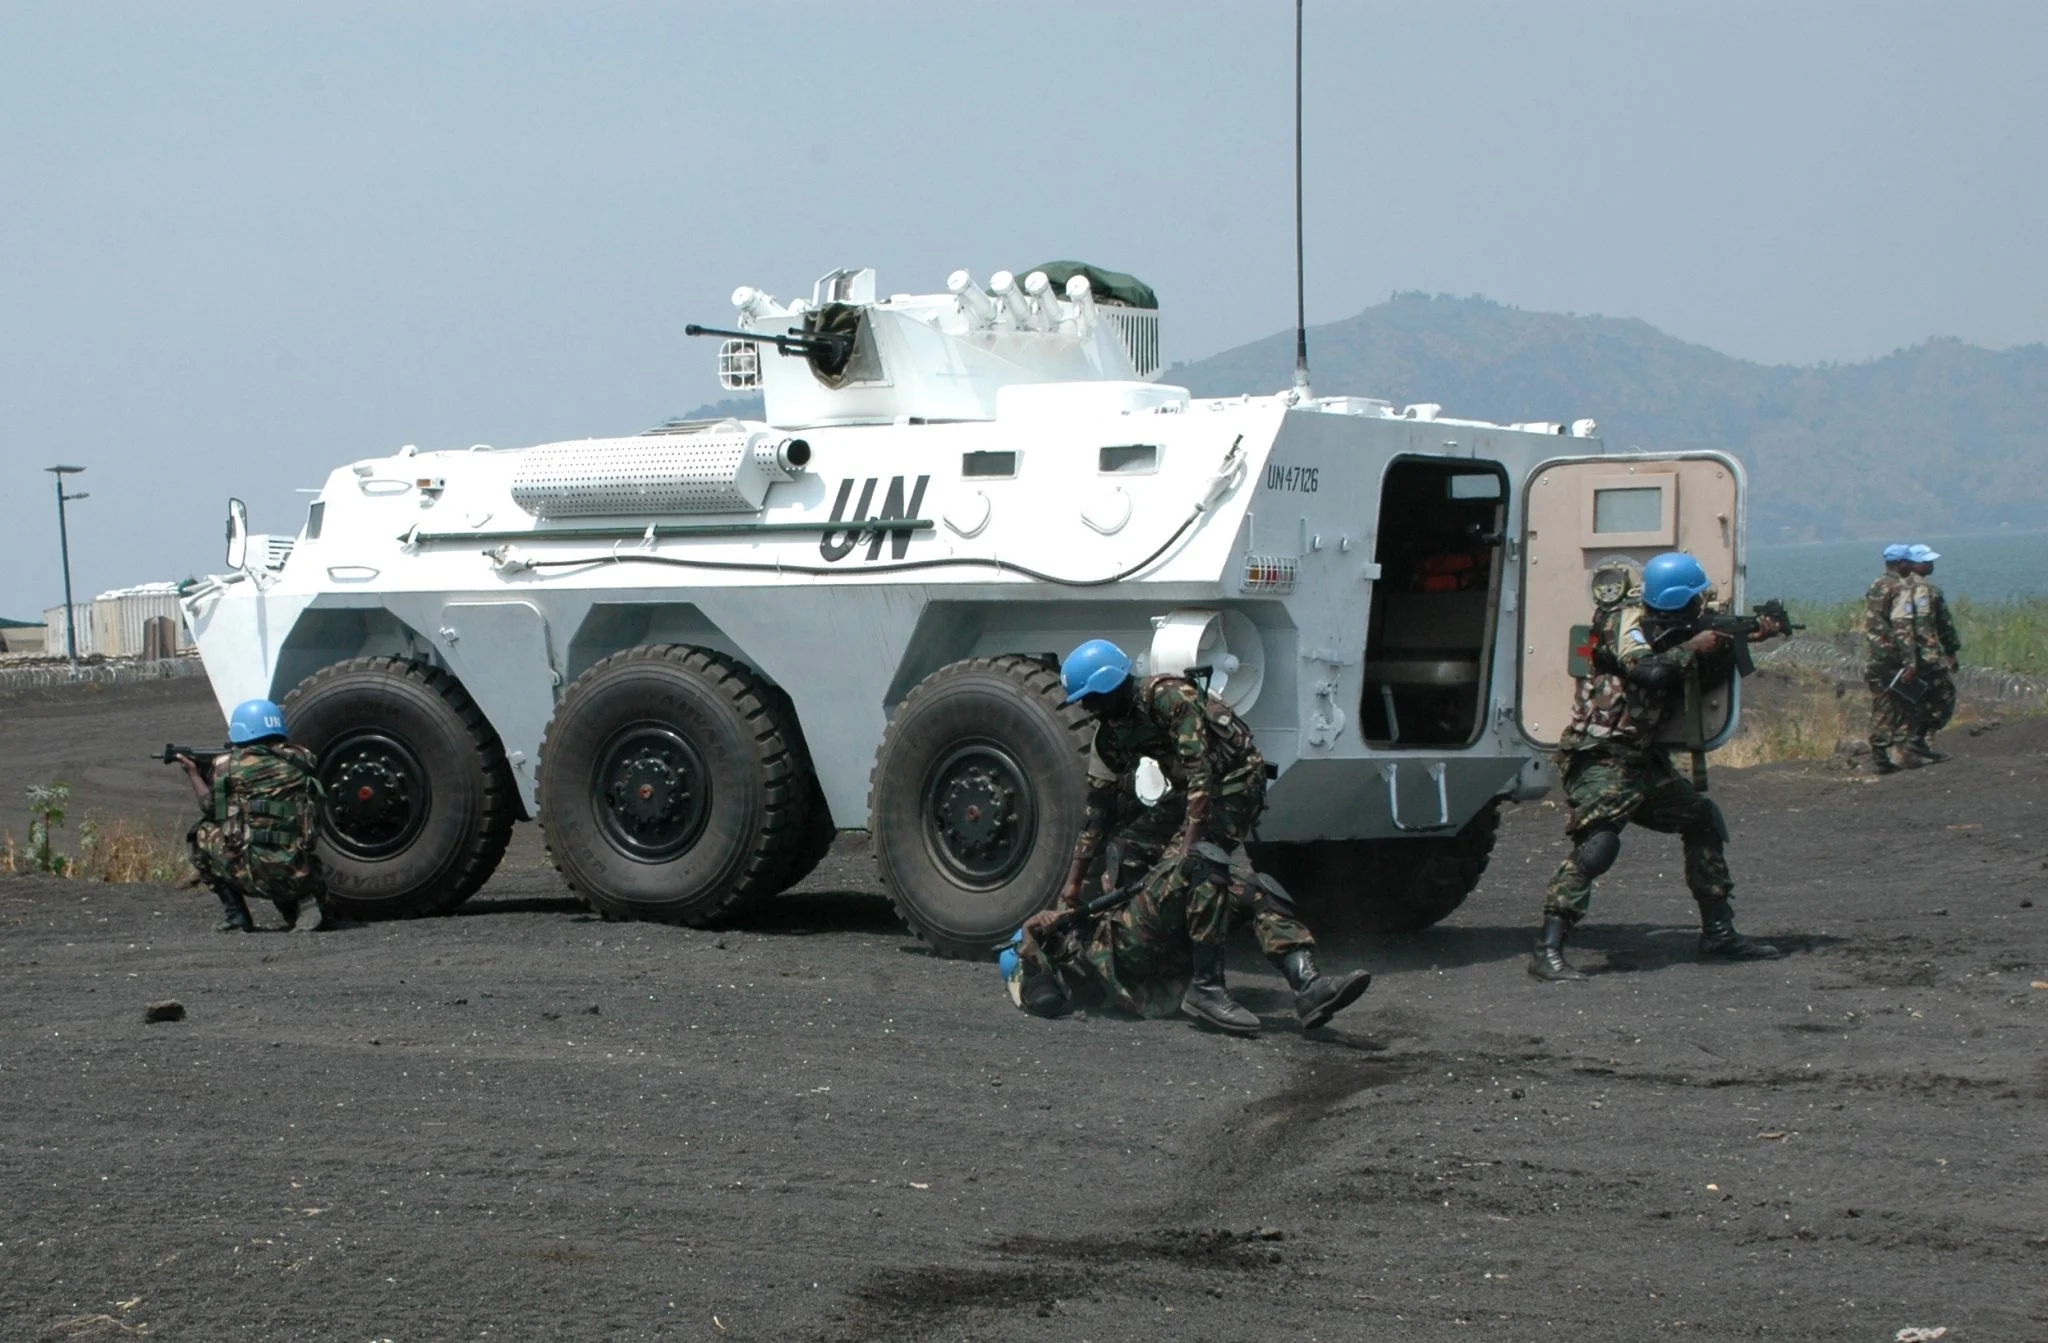 UN tank Image public domain